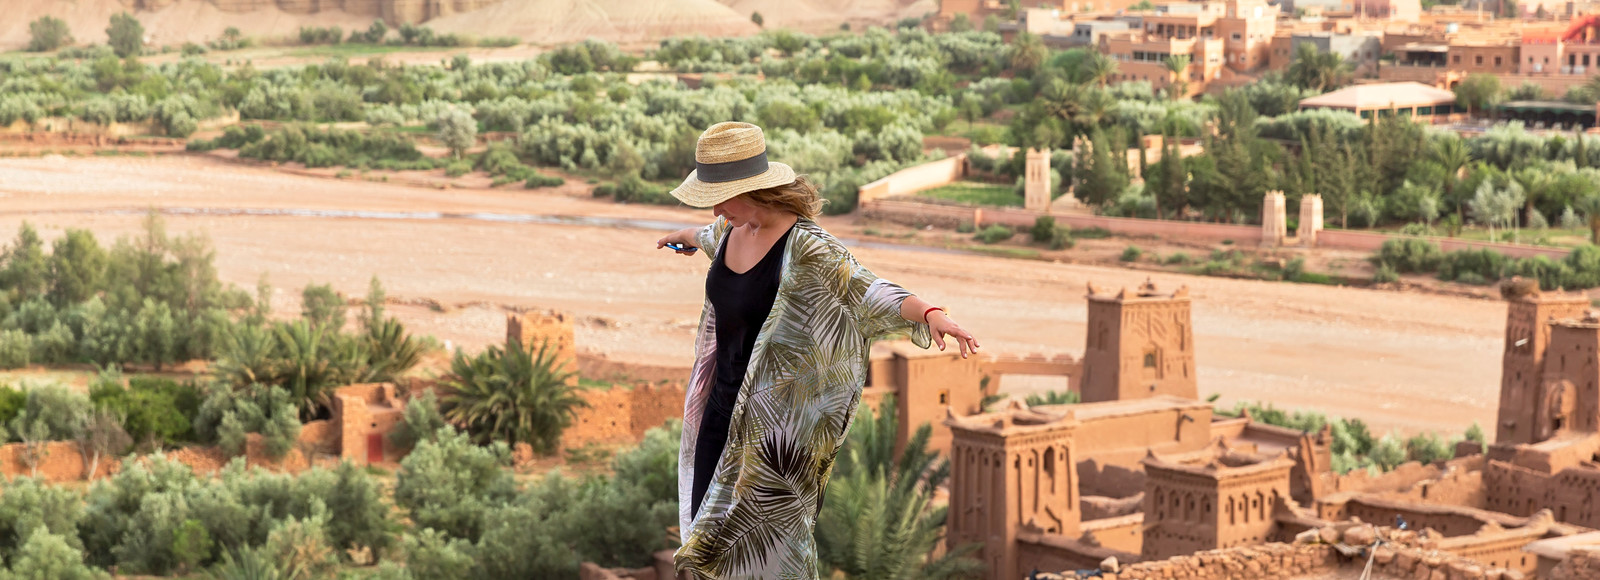 8 faszinierende Marokko Sehenswürdigkeiten